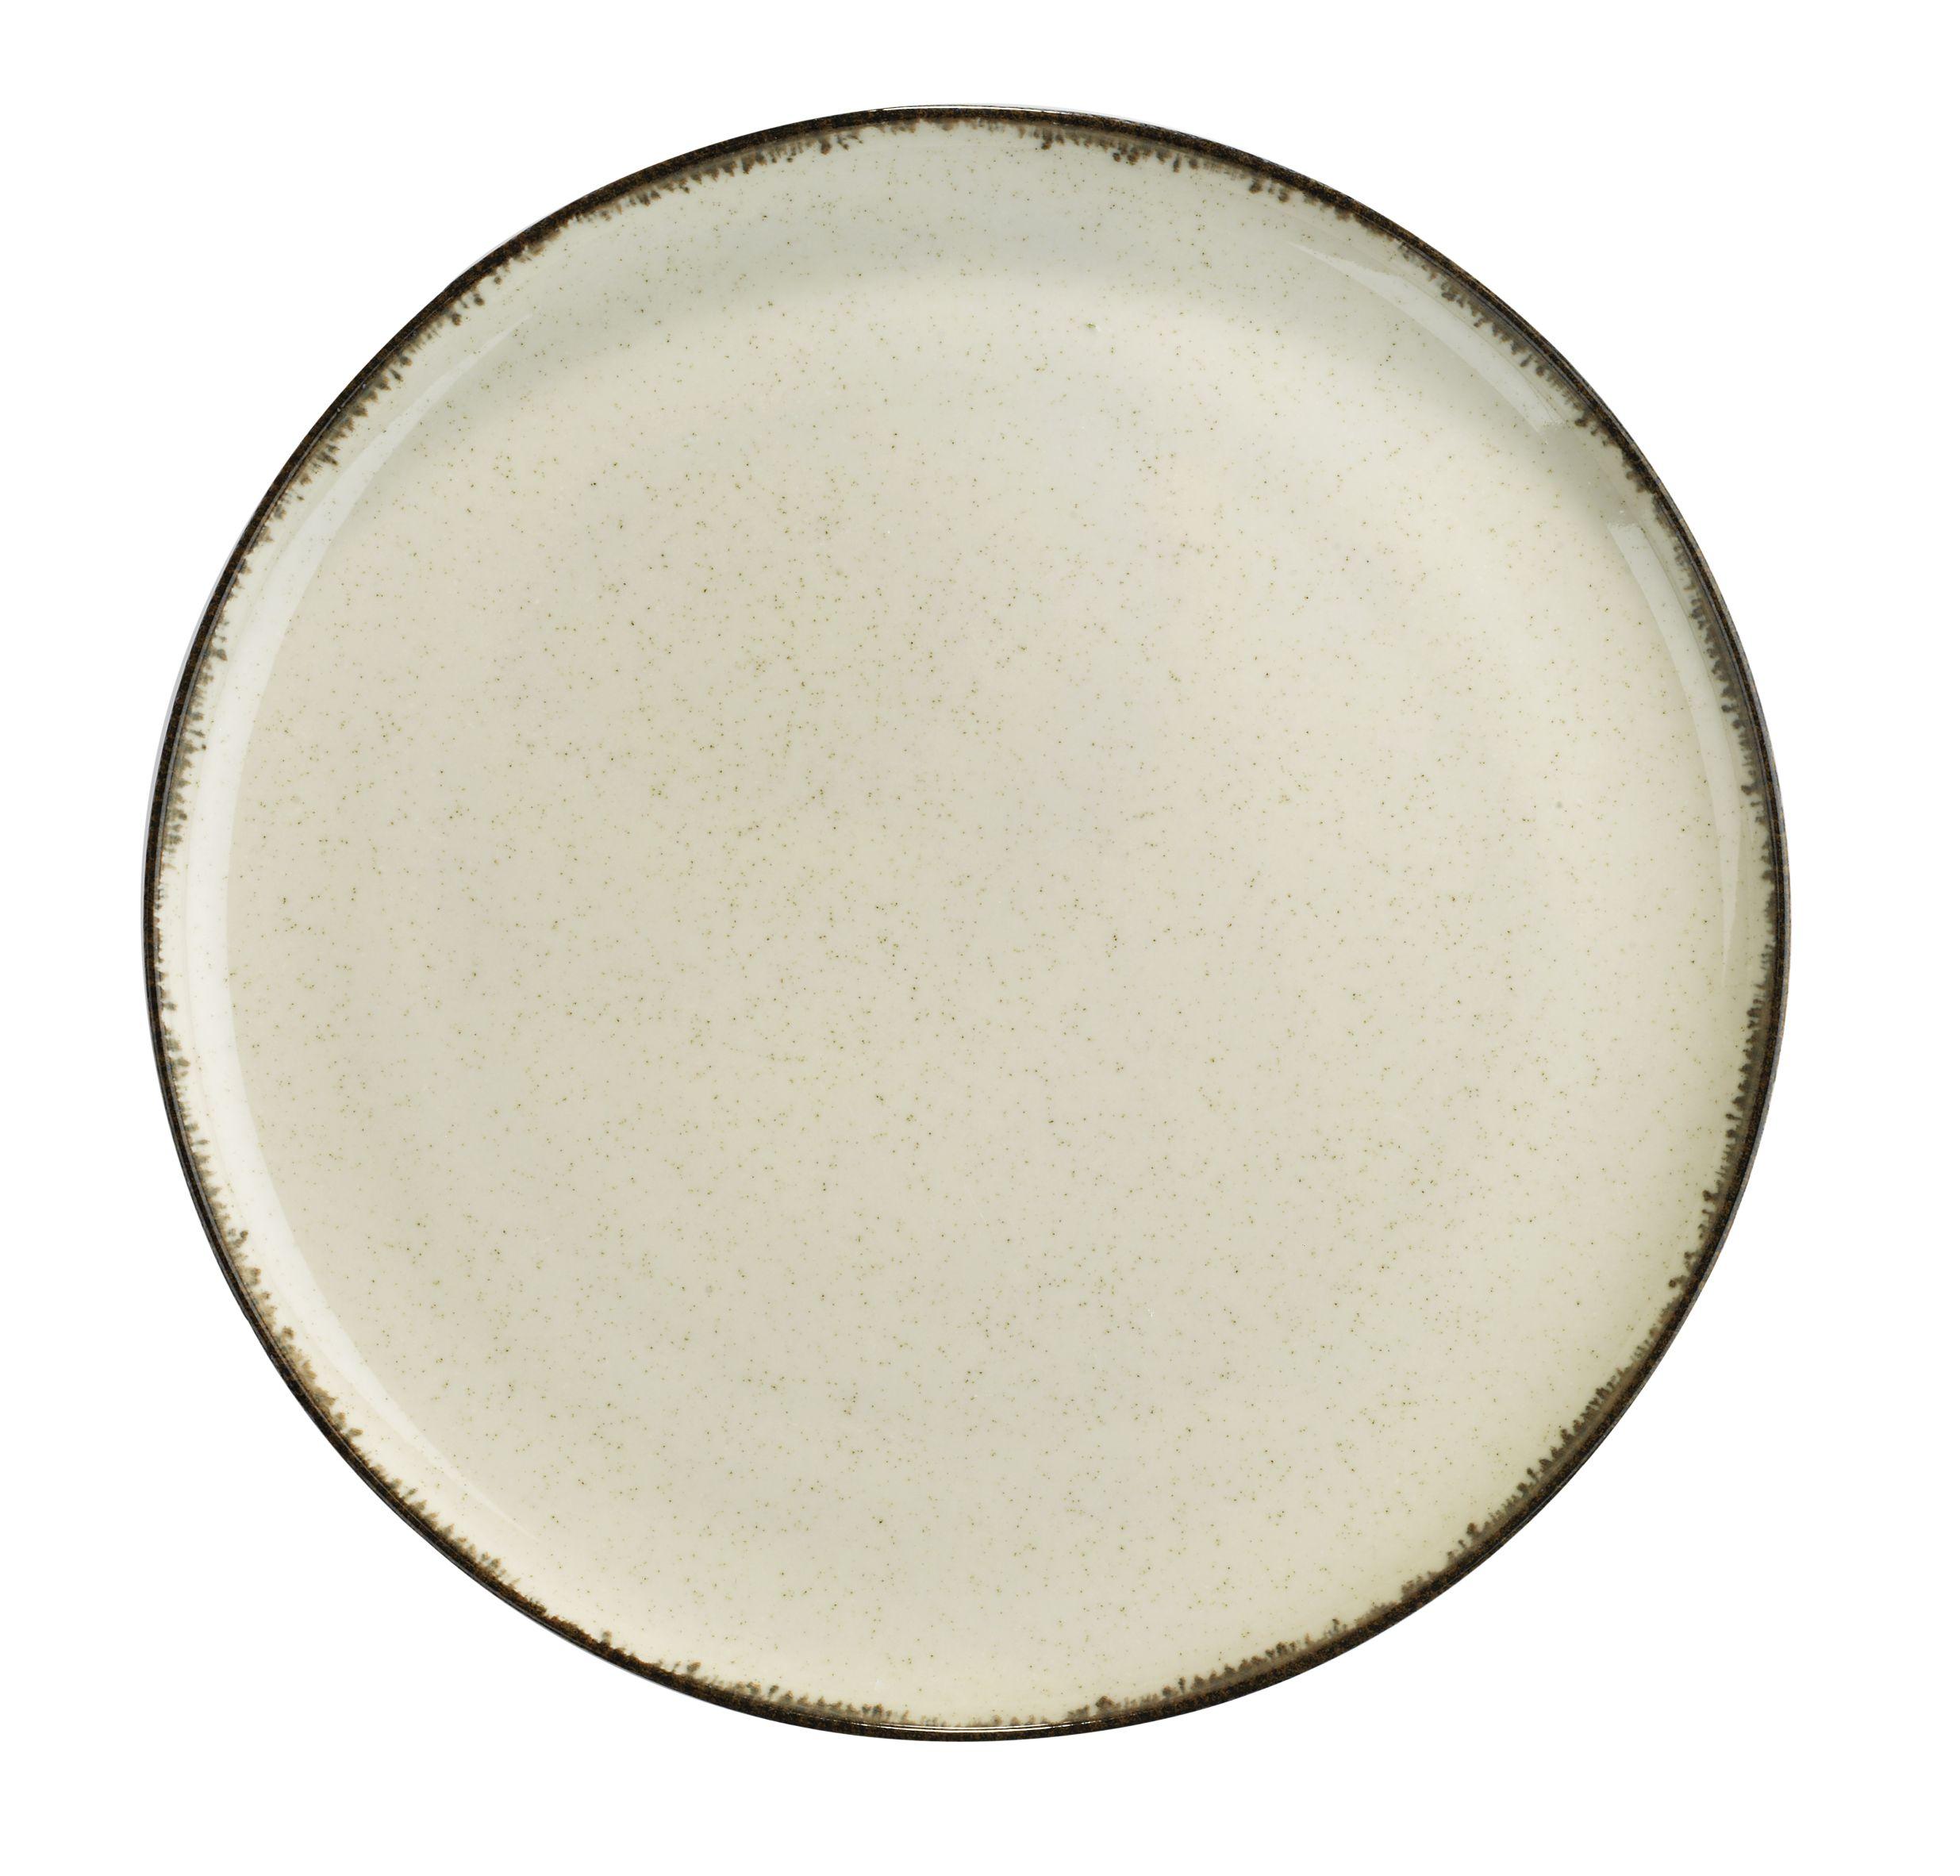 Speiseteller Porzellan Rund, Beige Sonora ca. 27 cm - Beige, MODERN, Keramik (27cm) - James Wood